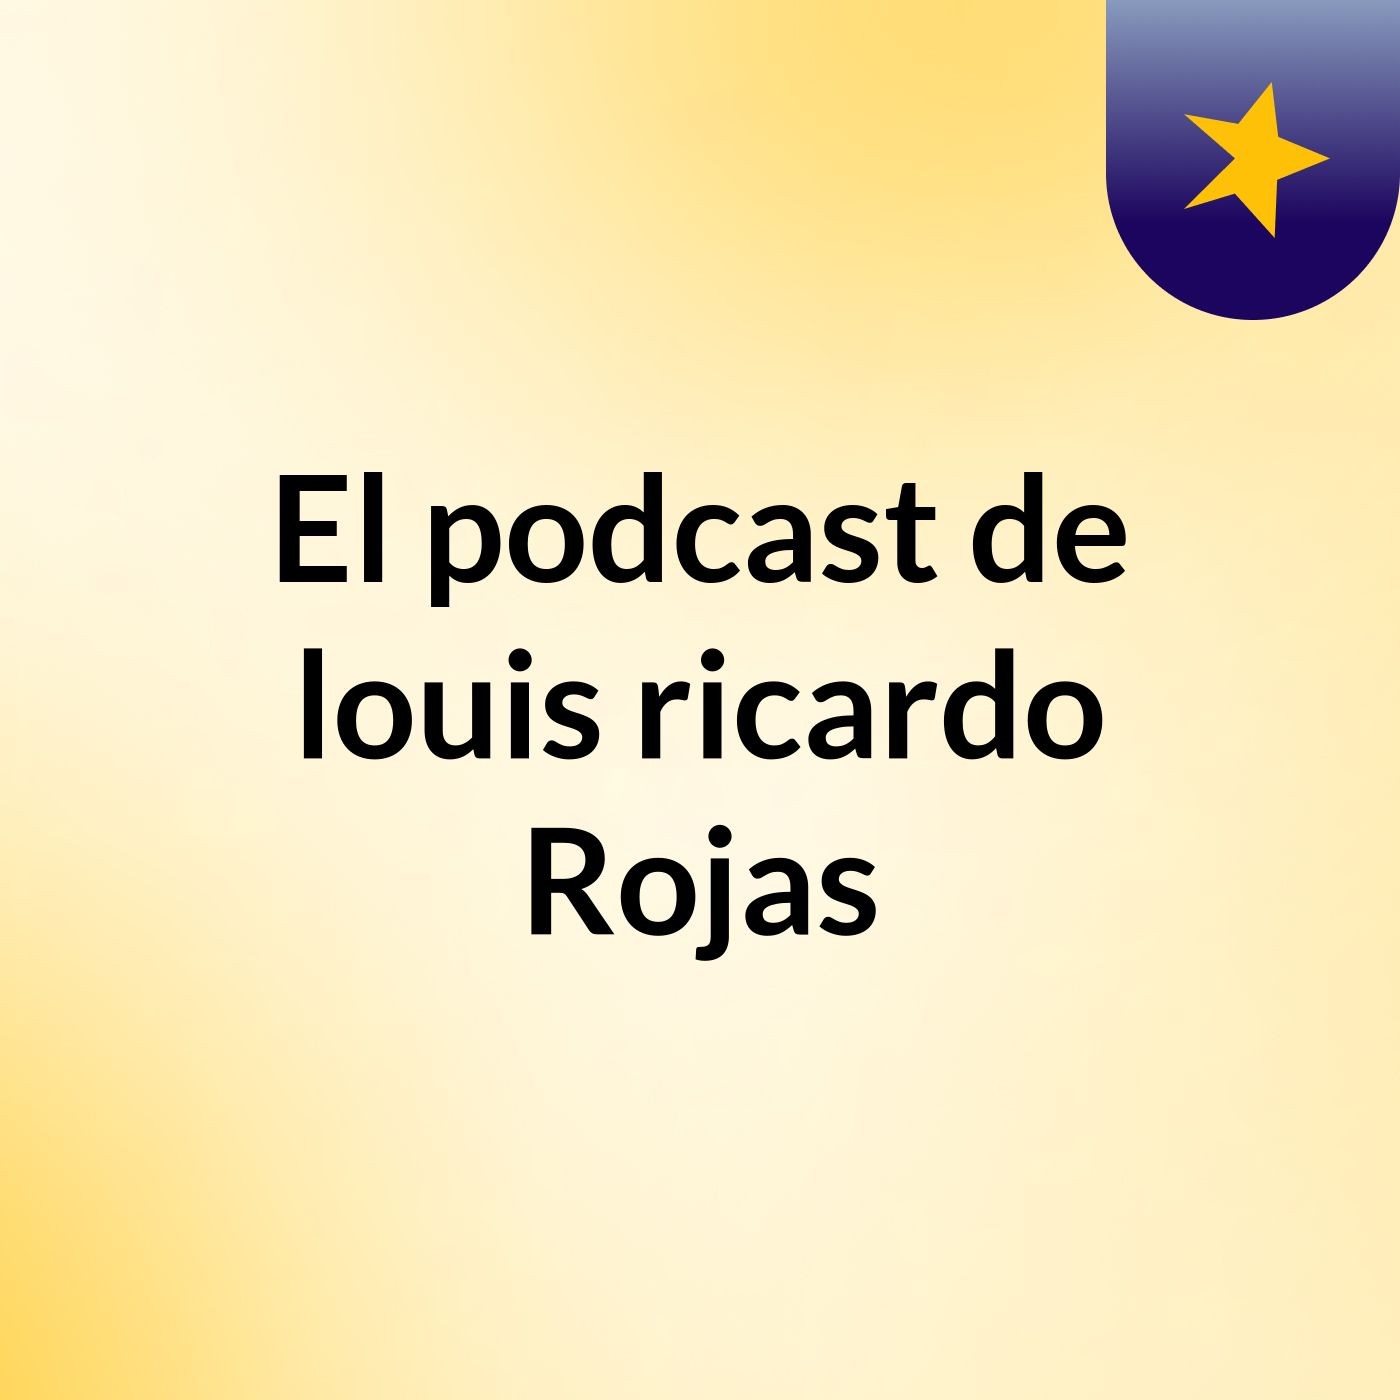 El podcast de louis ricardo Rojas